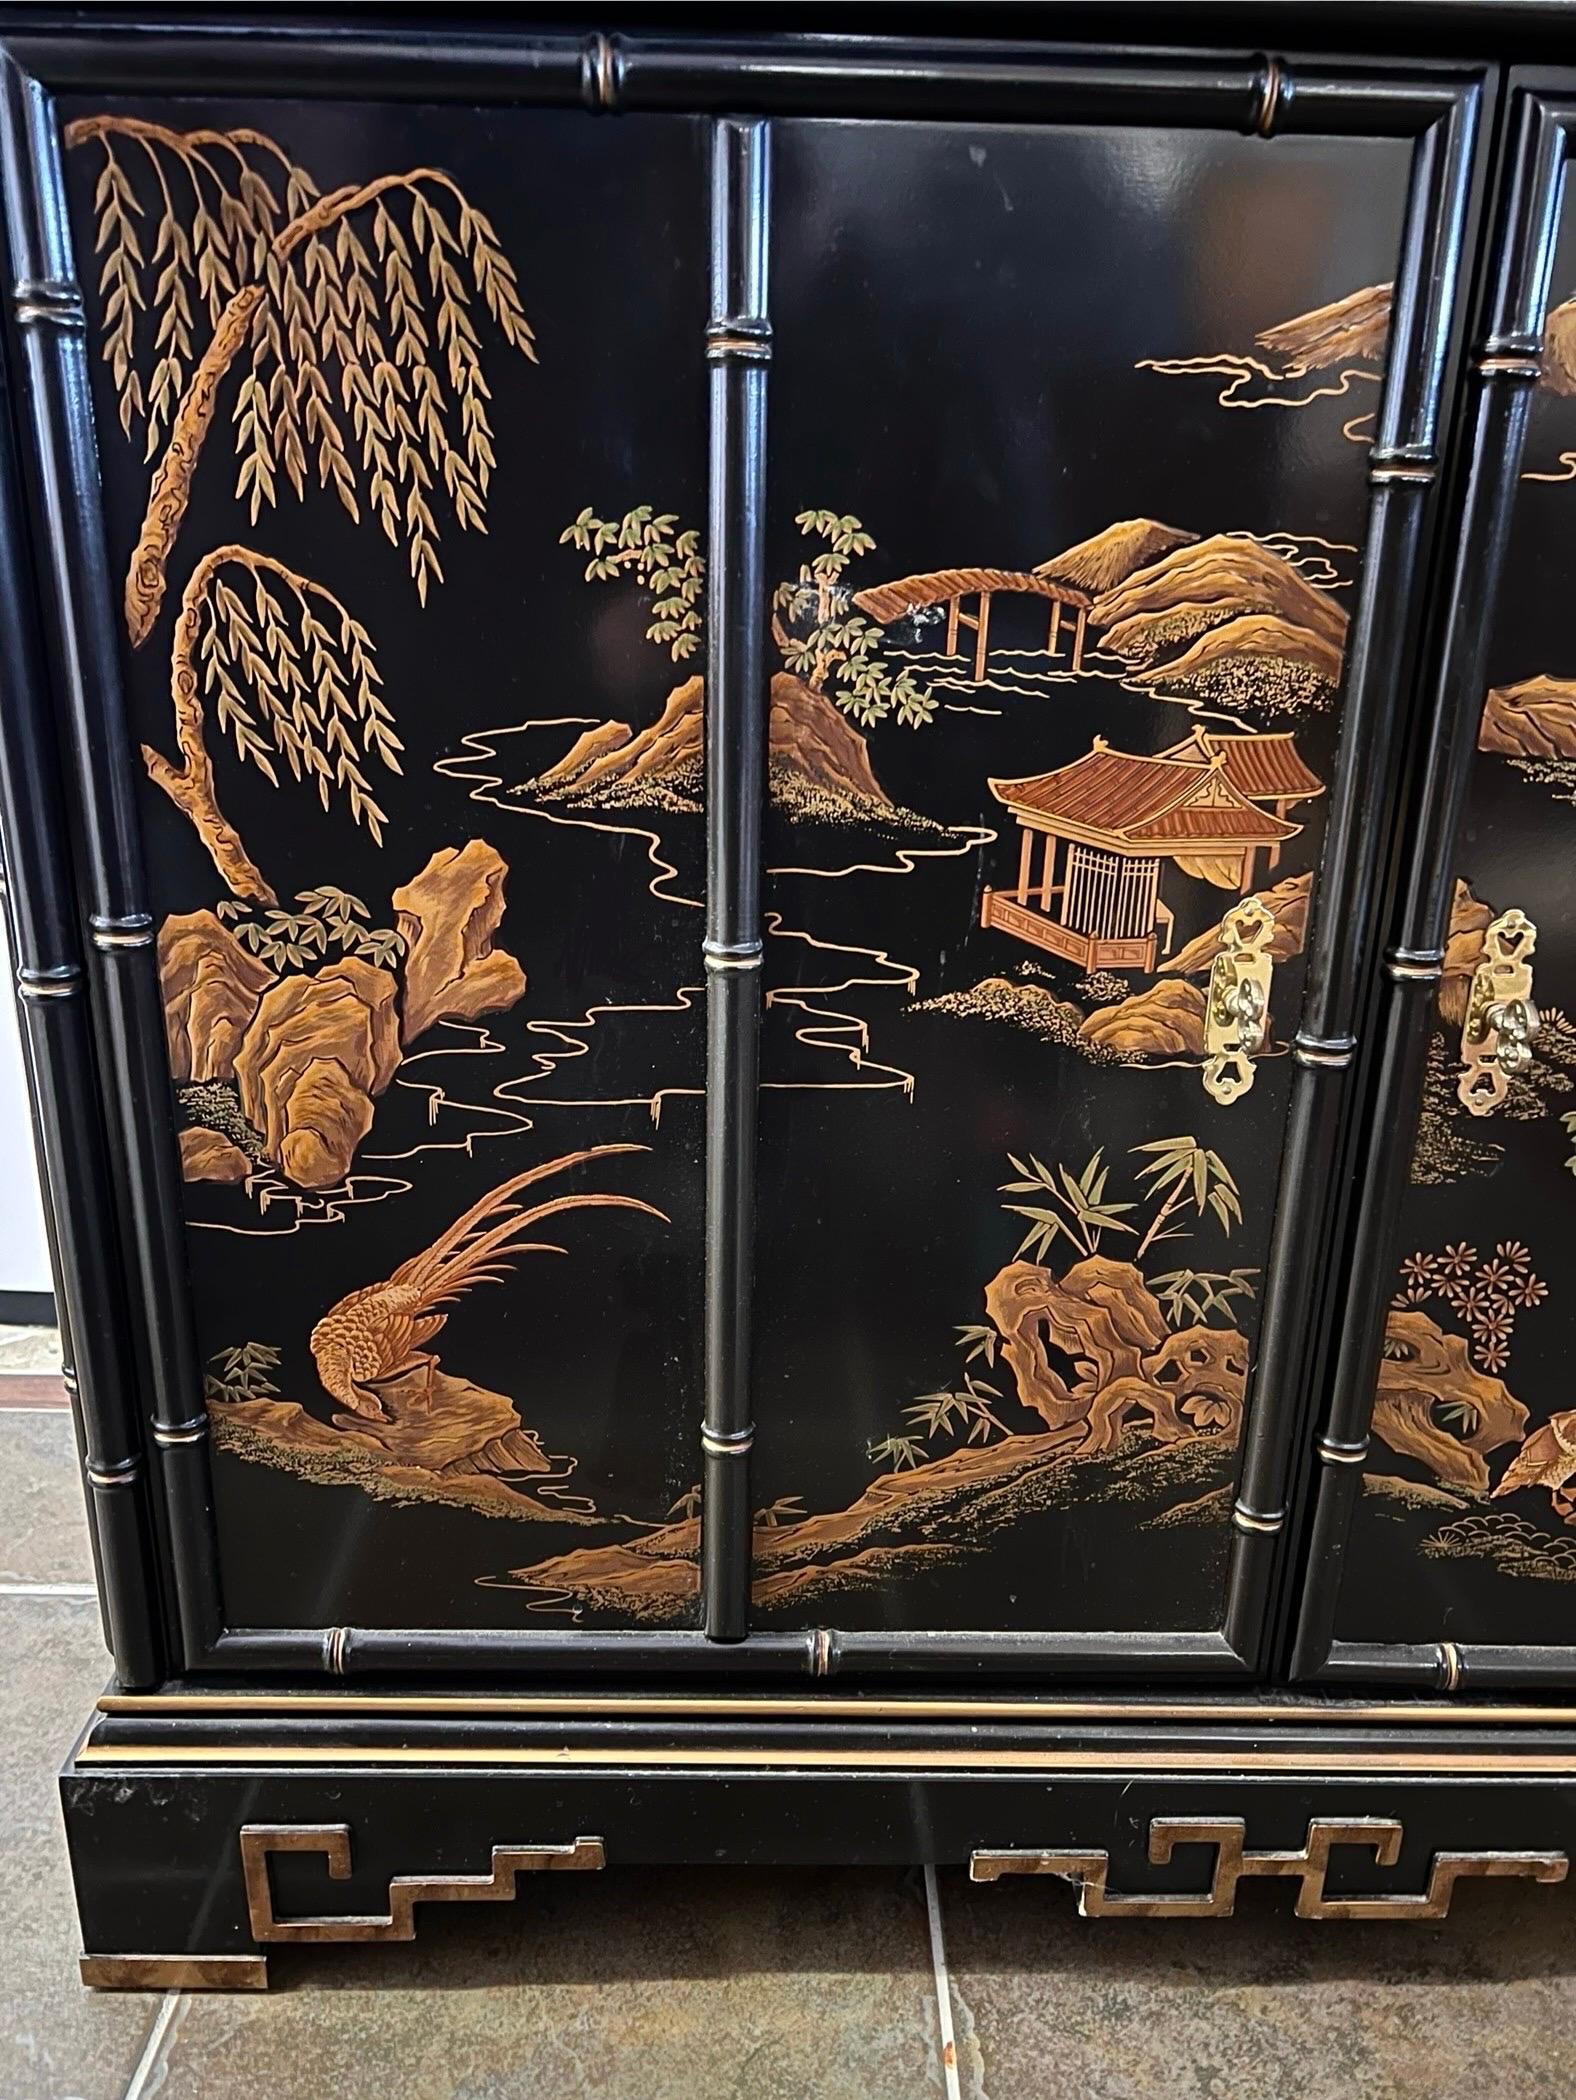 Superbe armoire de style chinoiserie laquée noire qui présente une pagode dorée avec de faux bambous sur tout le pourtour.  Il présente également des paysages peints à la main par des artisans qualifiés.
La partie supérieure comporte deux portes à